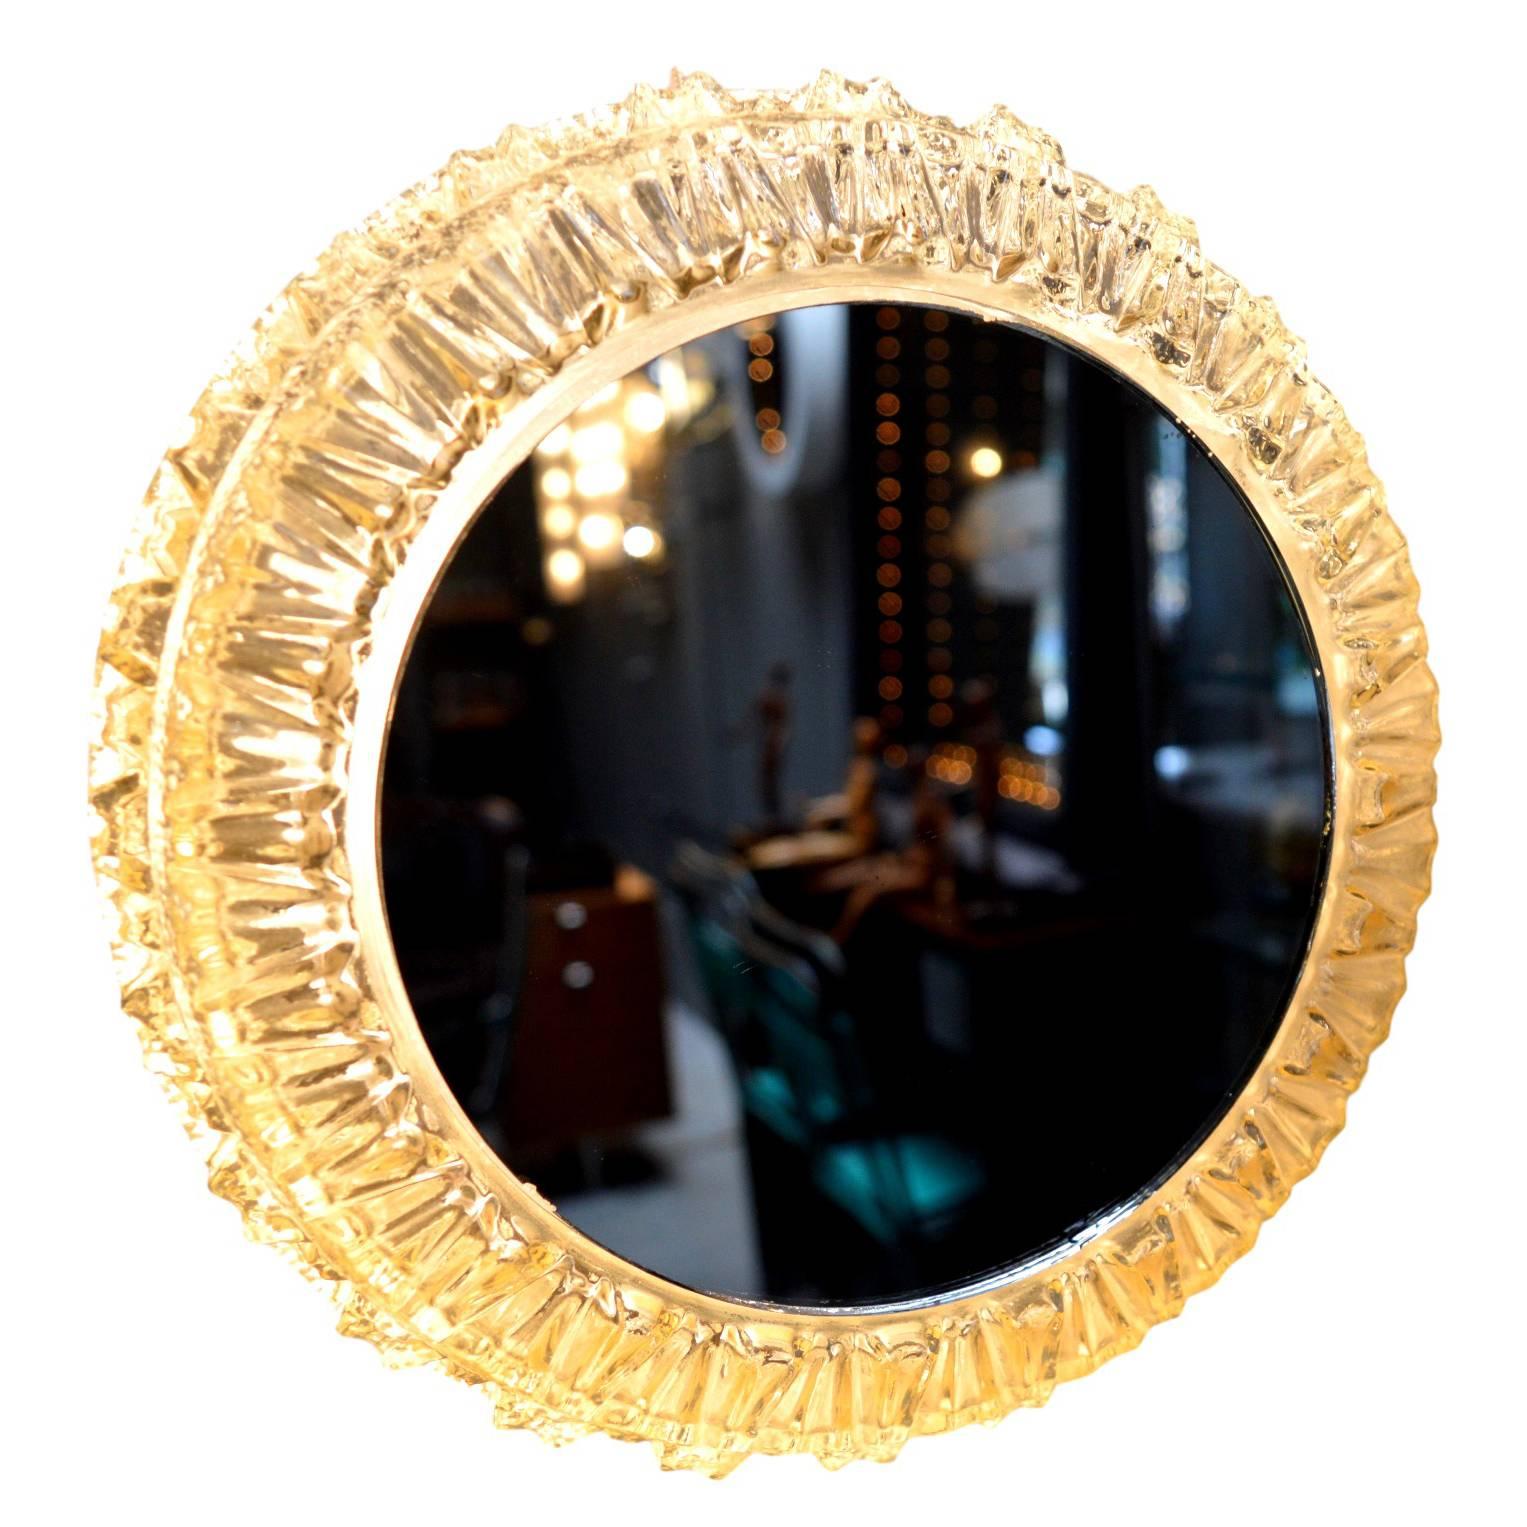 Magnifique miroir lumineux allemand. Verre à facettes avec miroir rond inséré. Nouvellement recâblé. Excellent état vintage. Superbe miroir mural ou montage encastré.